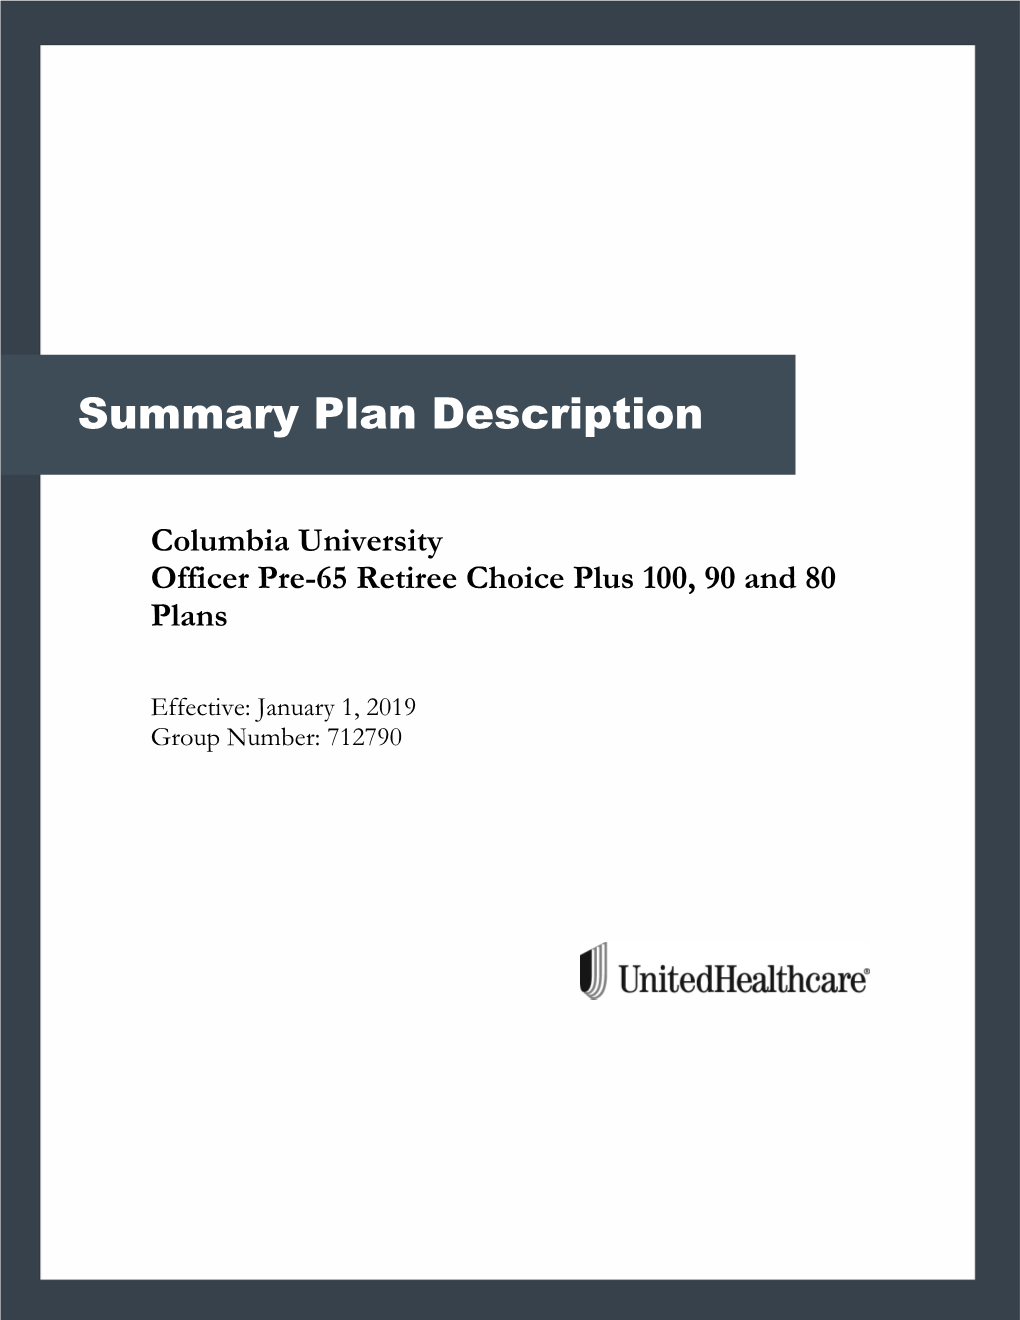 UHC Choice Plus 100, 90, 80 Summary Plan Description for Pre